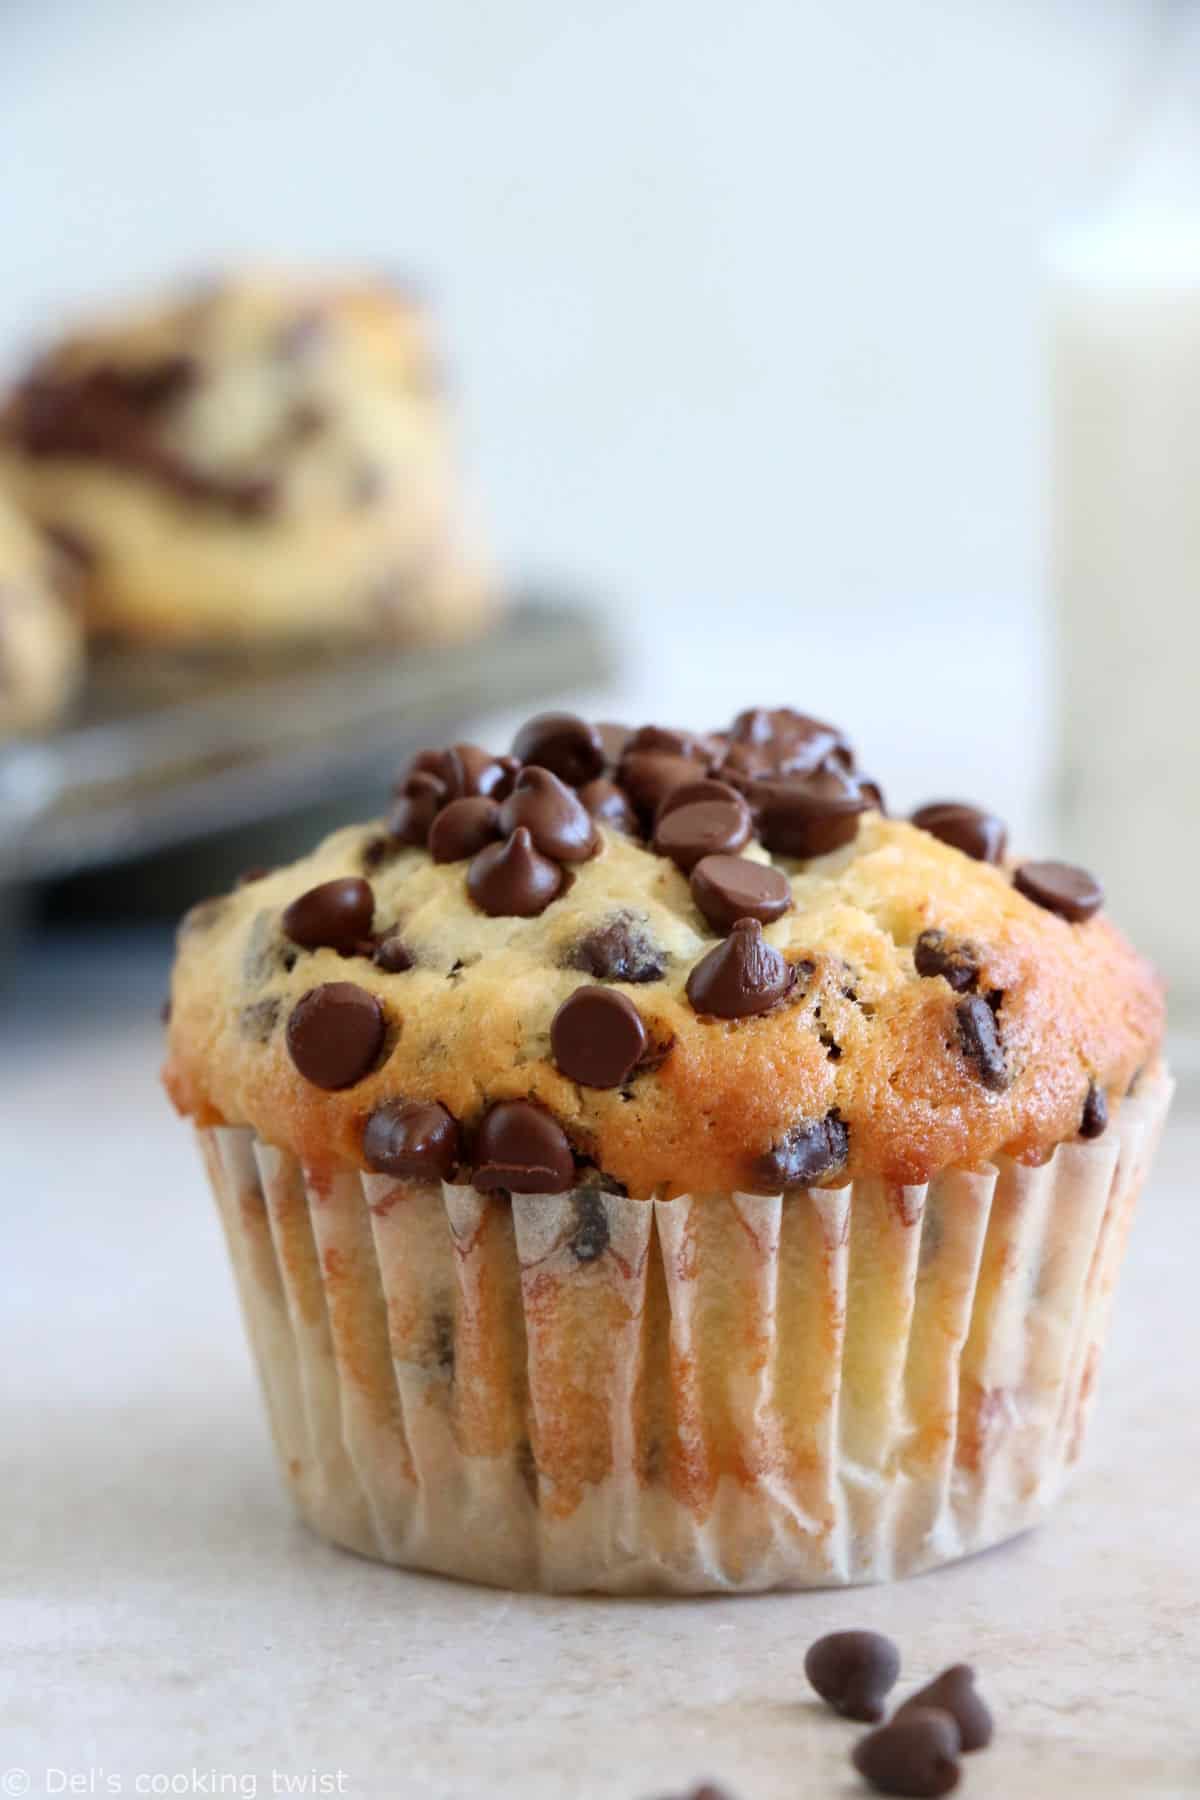 Ces muffins aux pépites de chocolat sont tendres, moelleux et garnis de mini pépites de chocolat. Une idée parfaite pour le goûter.